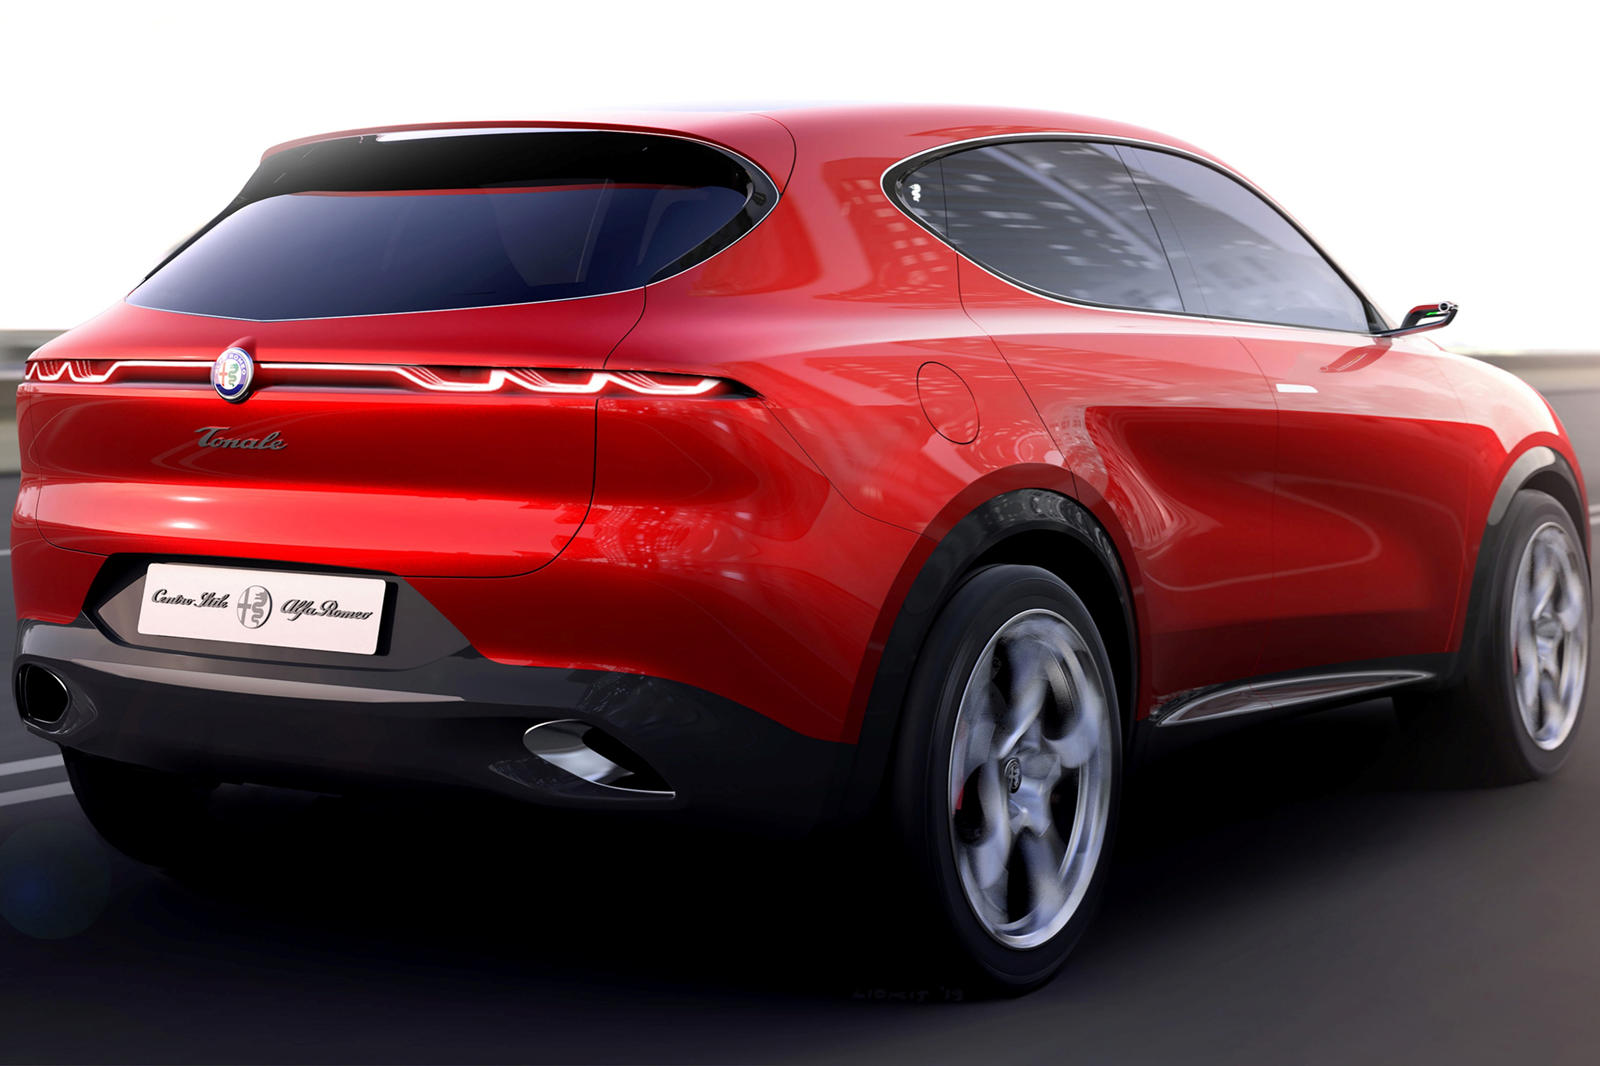 Материнская компания Alfa Romeo, FCA, и материнская компания Peugeot, PSA, в настоящее время находятся в процессе объединения, чтобы стать четвертым по величине автопроизводителем в мире. Те же источники, которые предсказывают новый электрический кро